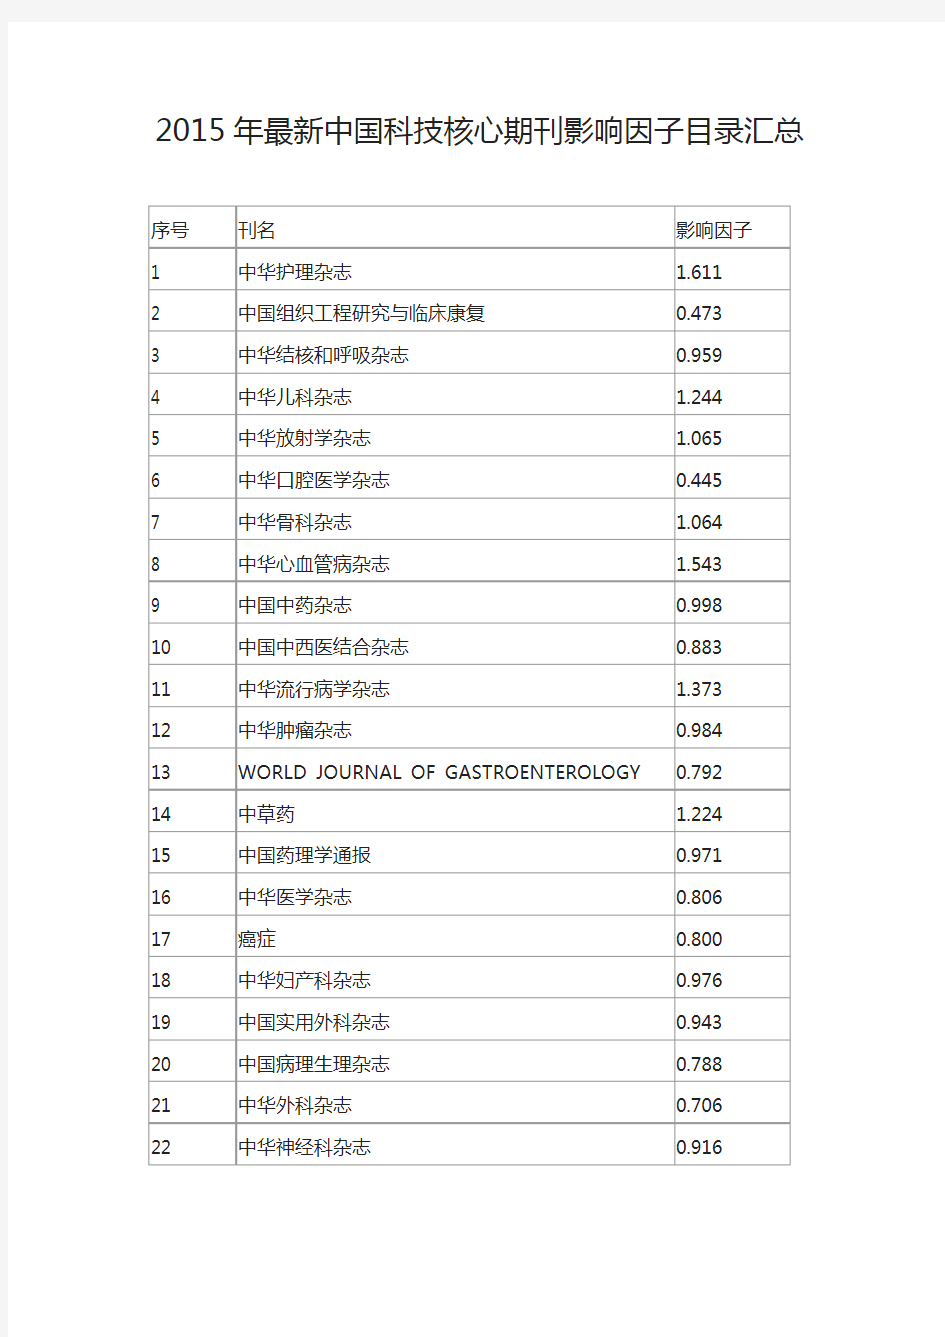 2015年最新中国科技核心期刊影响因子目录汇总